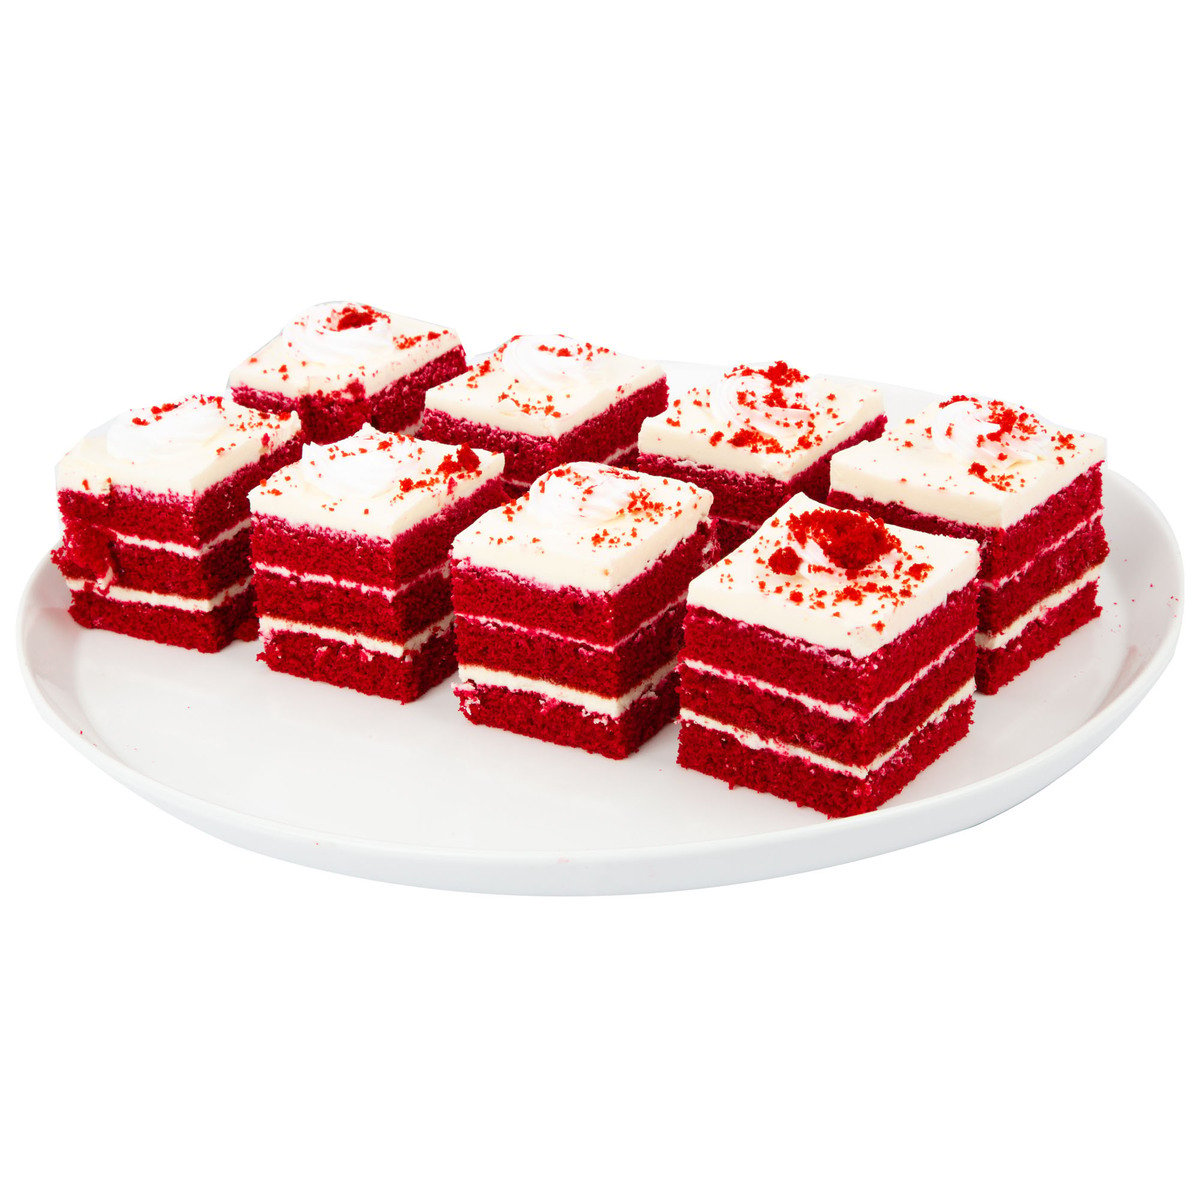 Red Velvet Pastry Cake 8 pcs